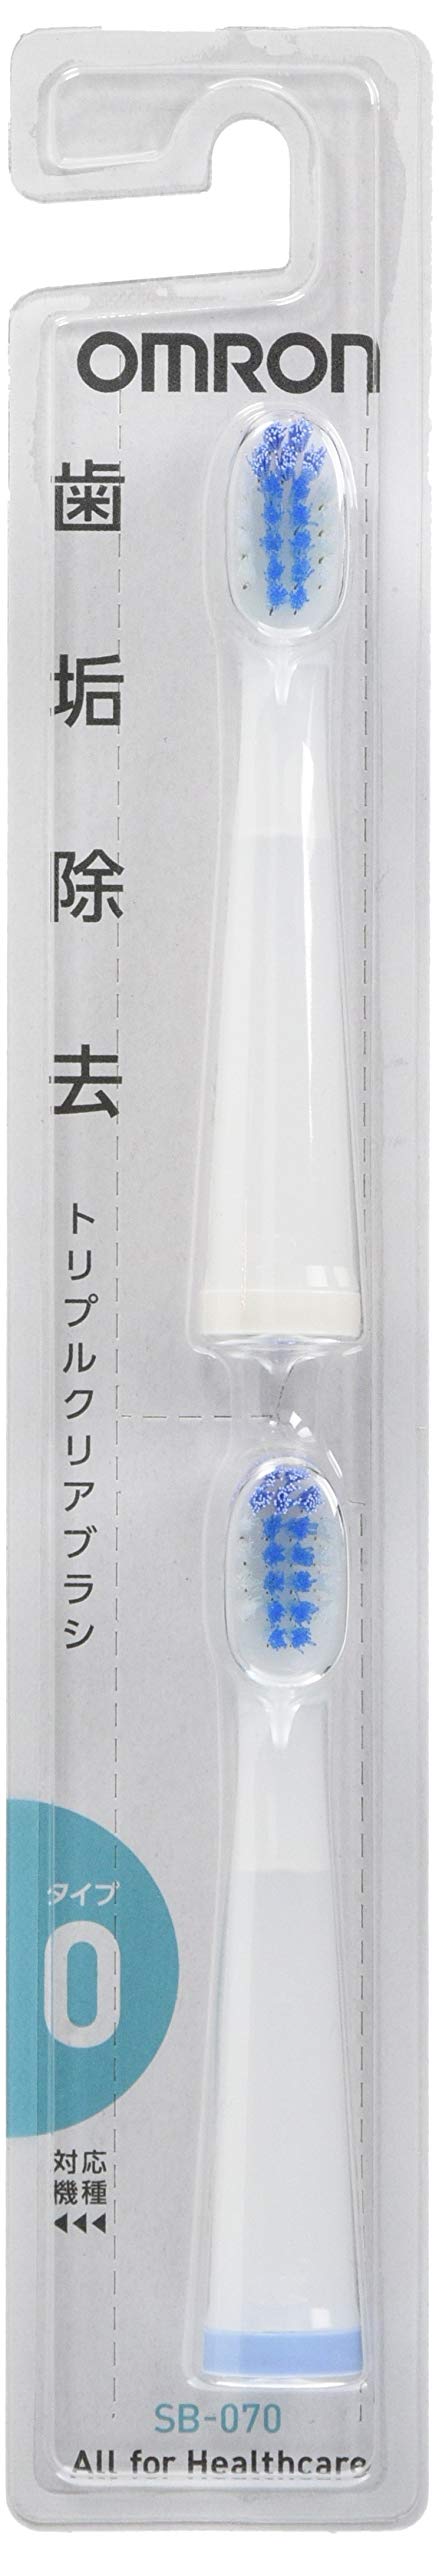 オムロン 電動歯ブラシ用 替えブラシ トリプルクリアブラシ タイプ0 (2本入5個セット) SB-070-5P2 8×4×21.3cm